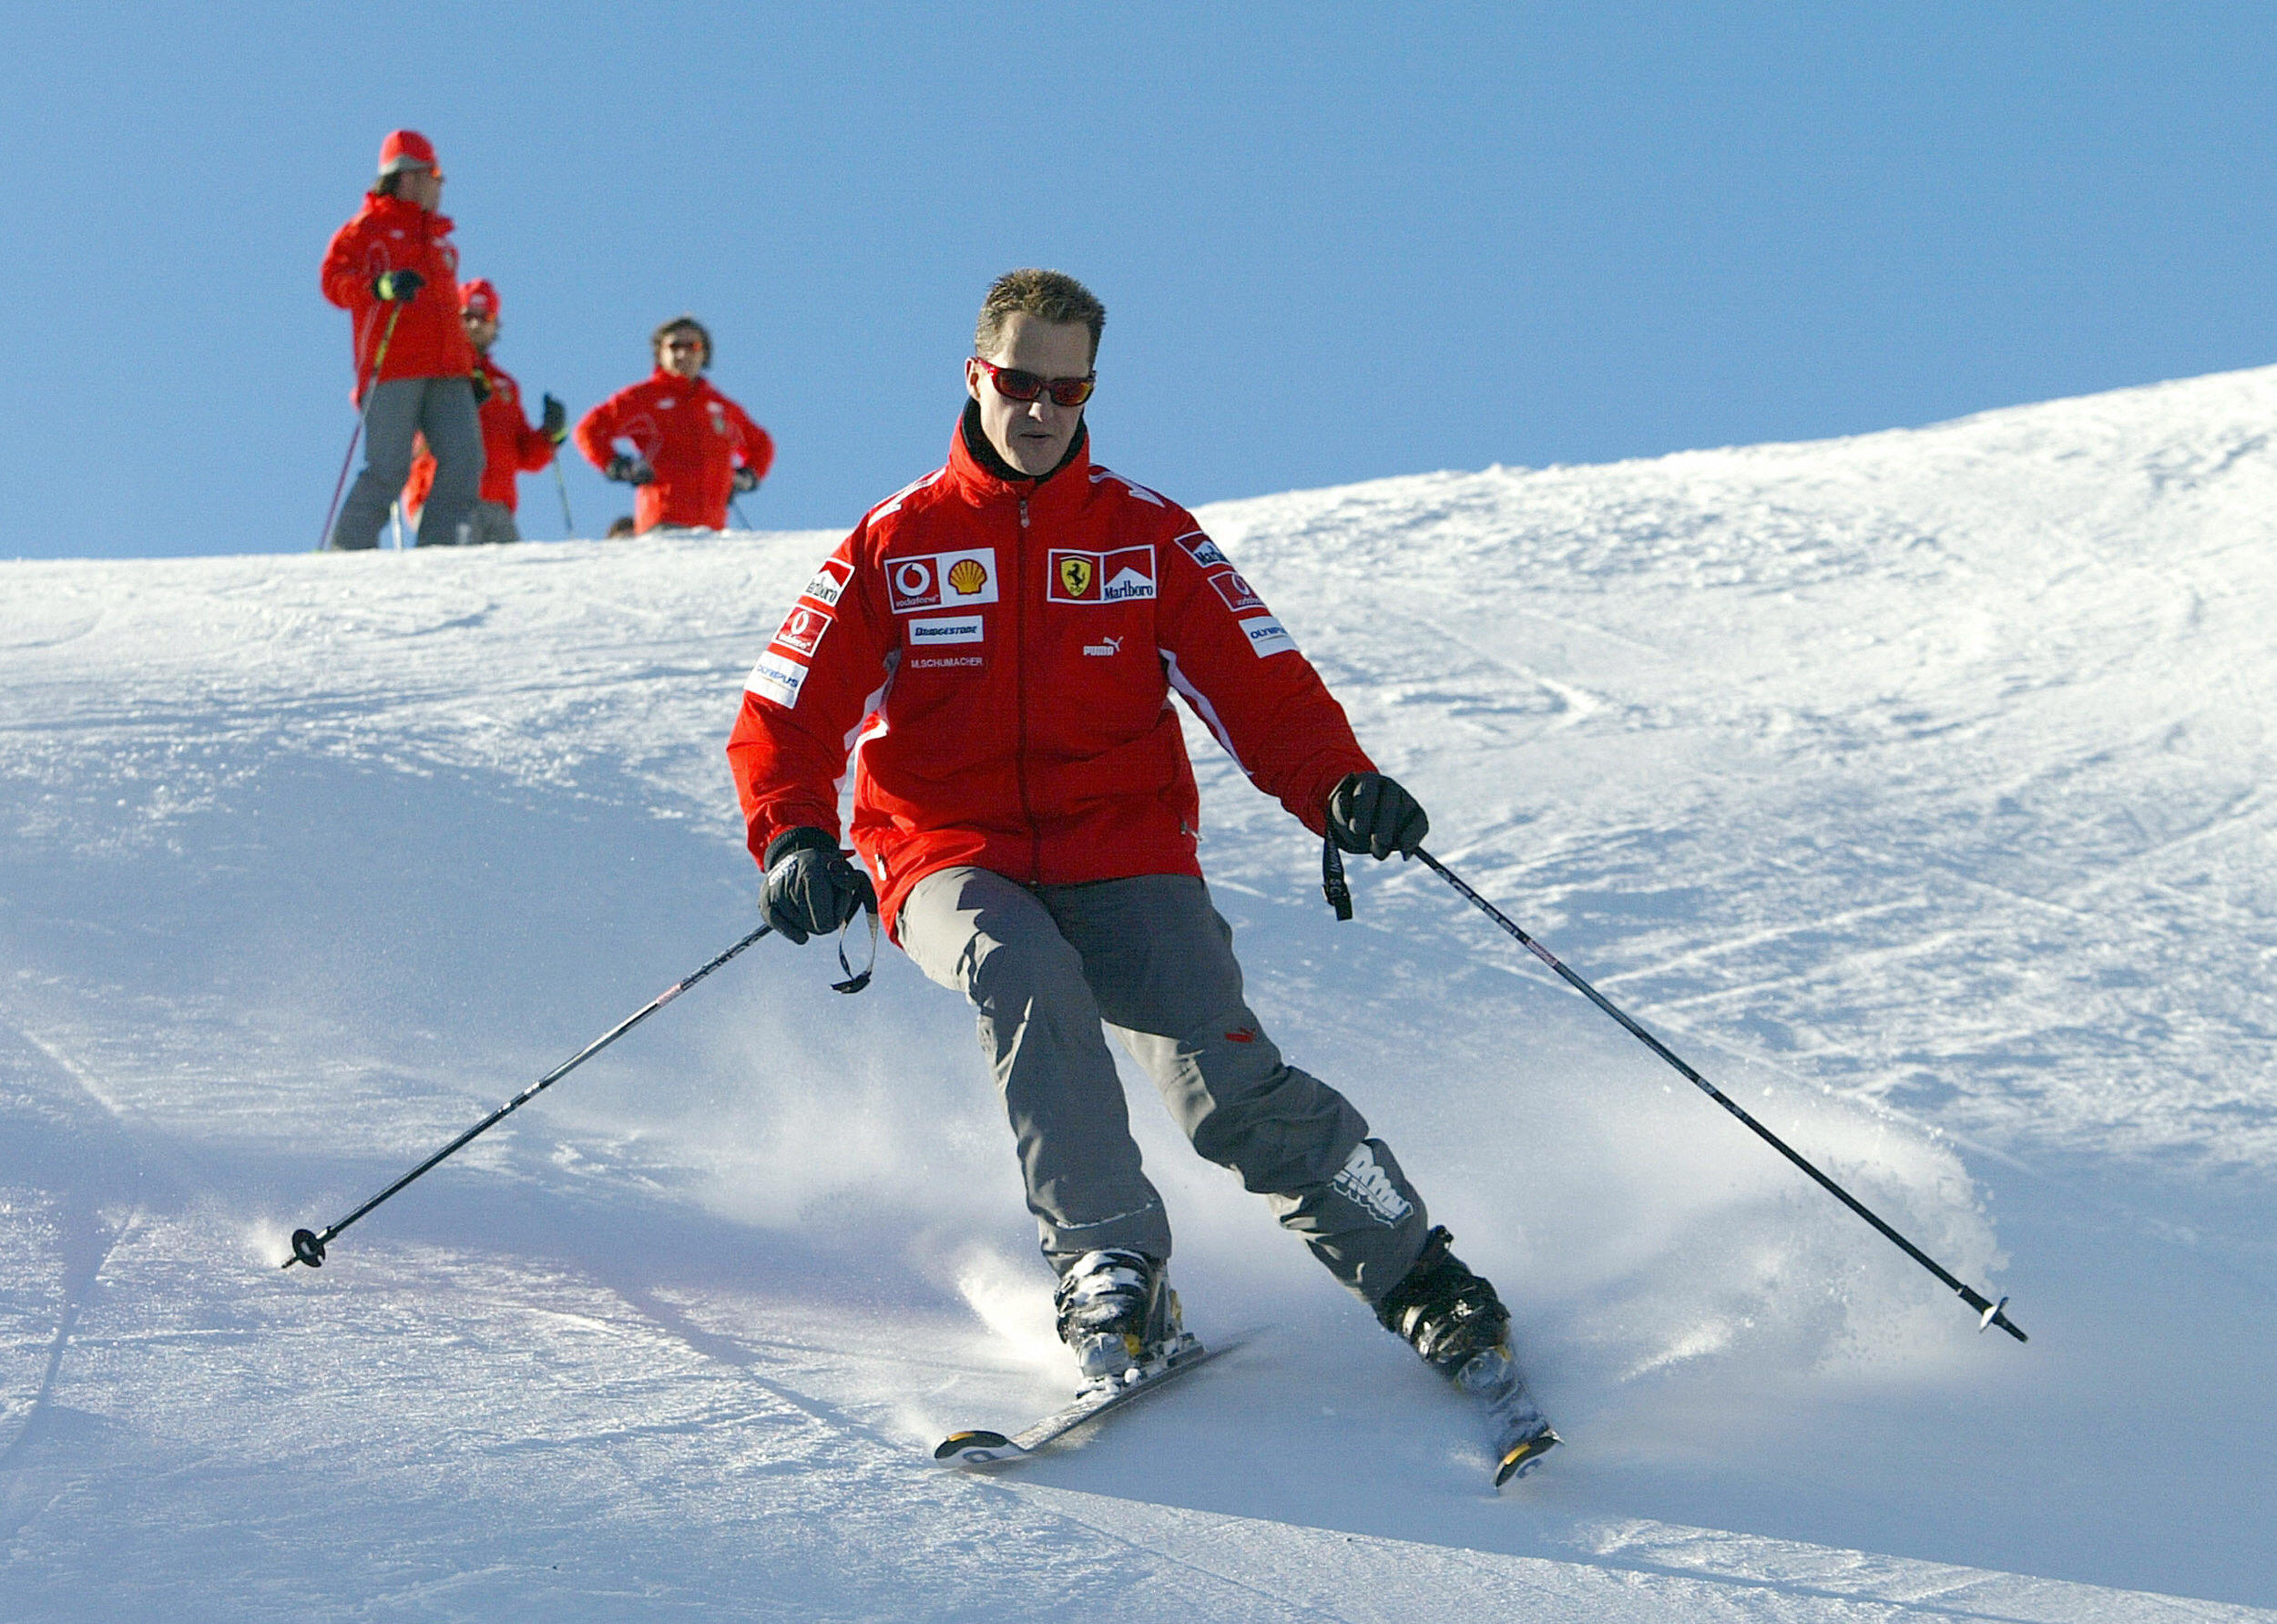 Ein tragischer Skiunfall im Jahr 2013 führte dazu, dass Schumacher im medizinisch bedingten Koma lag und lebenslange Hirnverletzungen erlitt